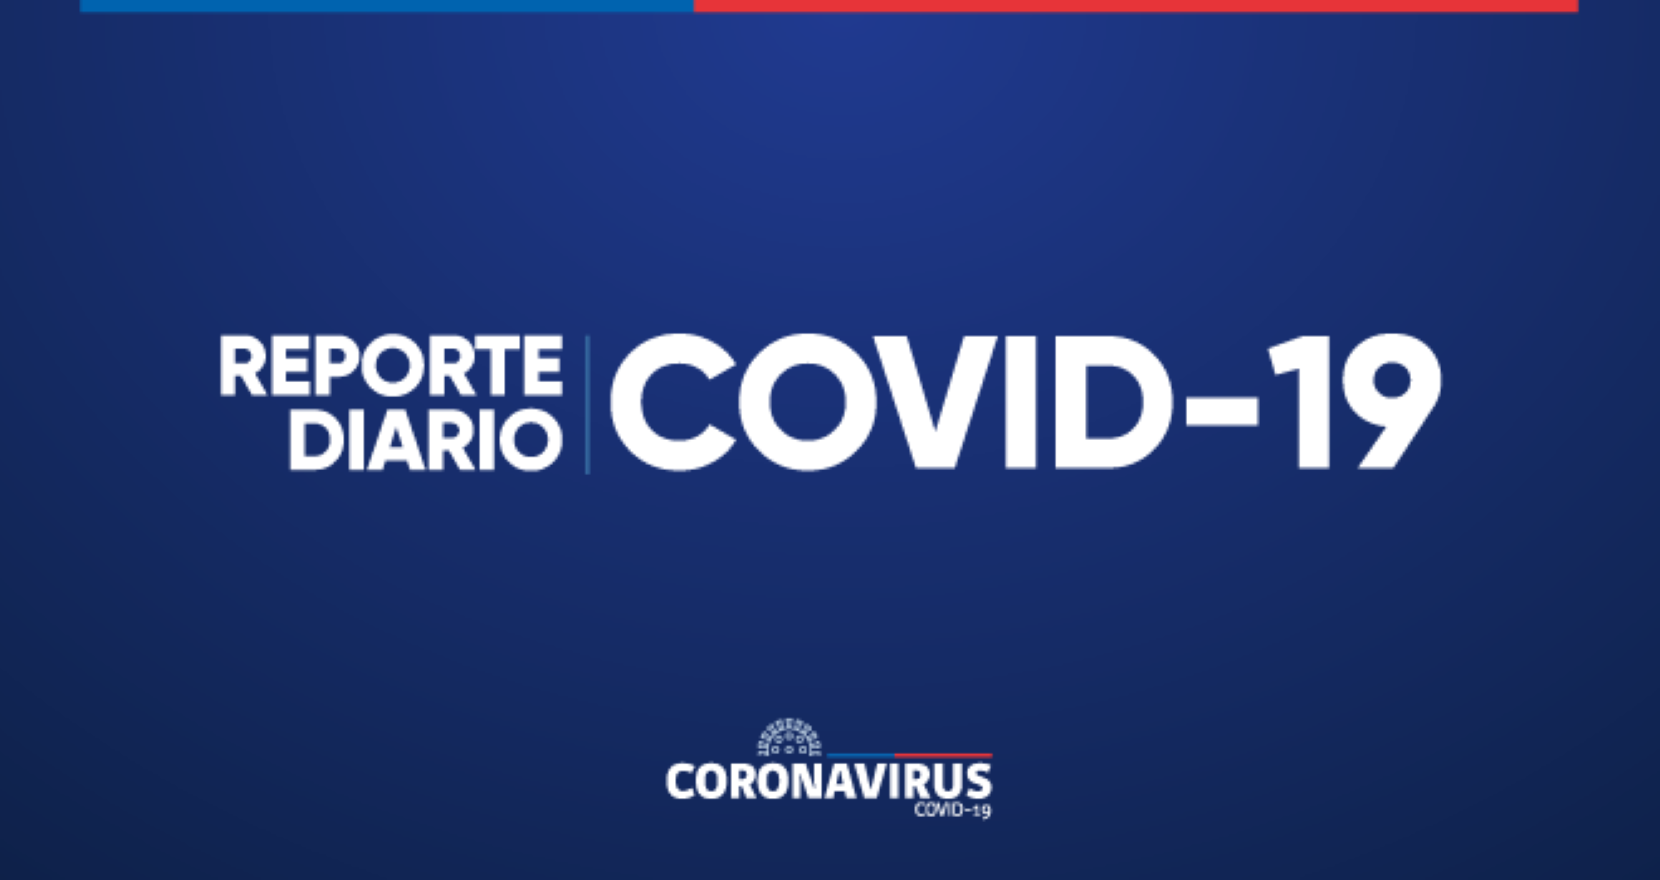 Ministerio de Salud informó 10.433 casos nuevos de COVID-19, con una positividad de 15,23% el domingo 26 de junio a nivel nacional